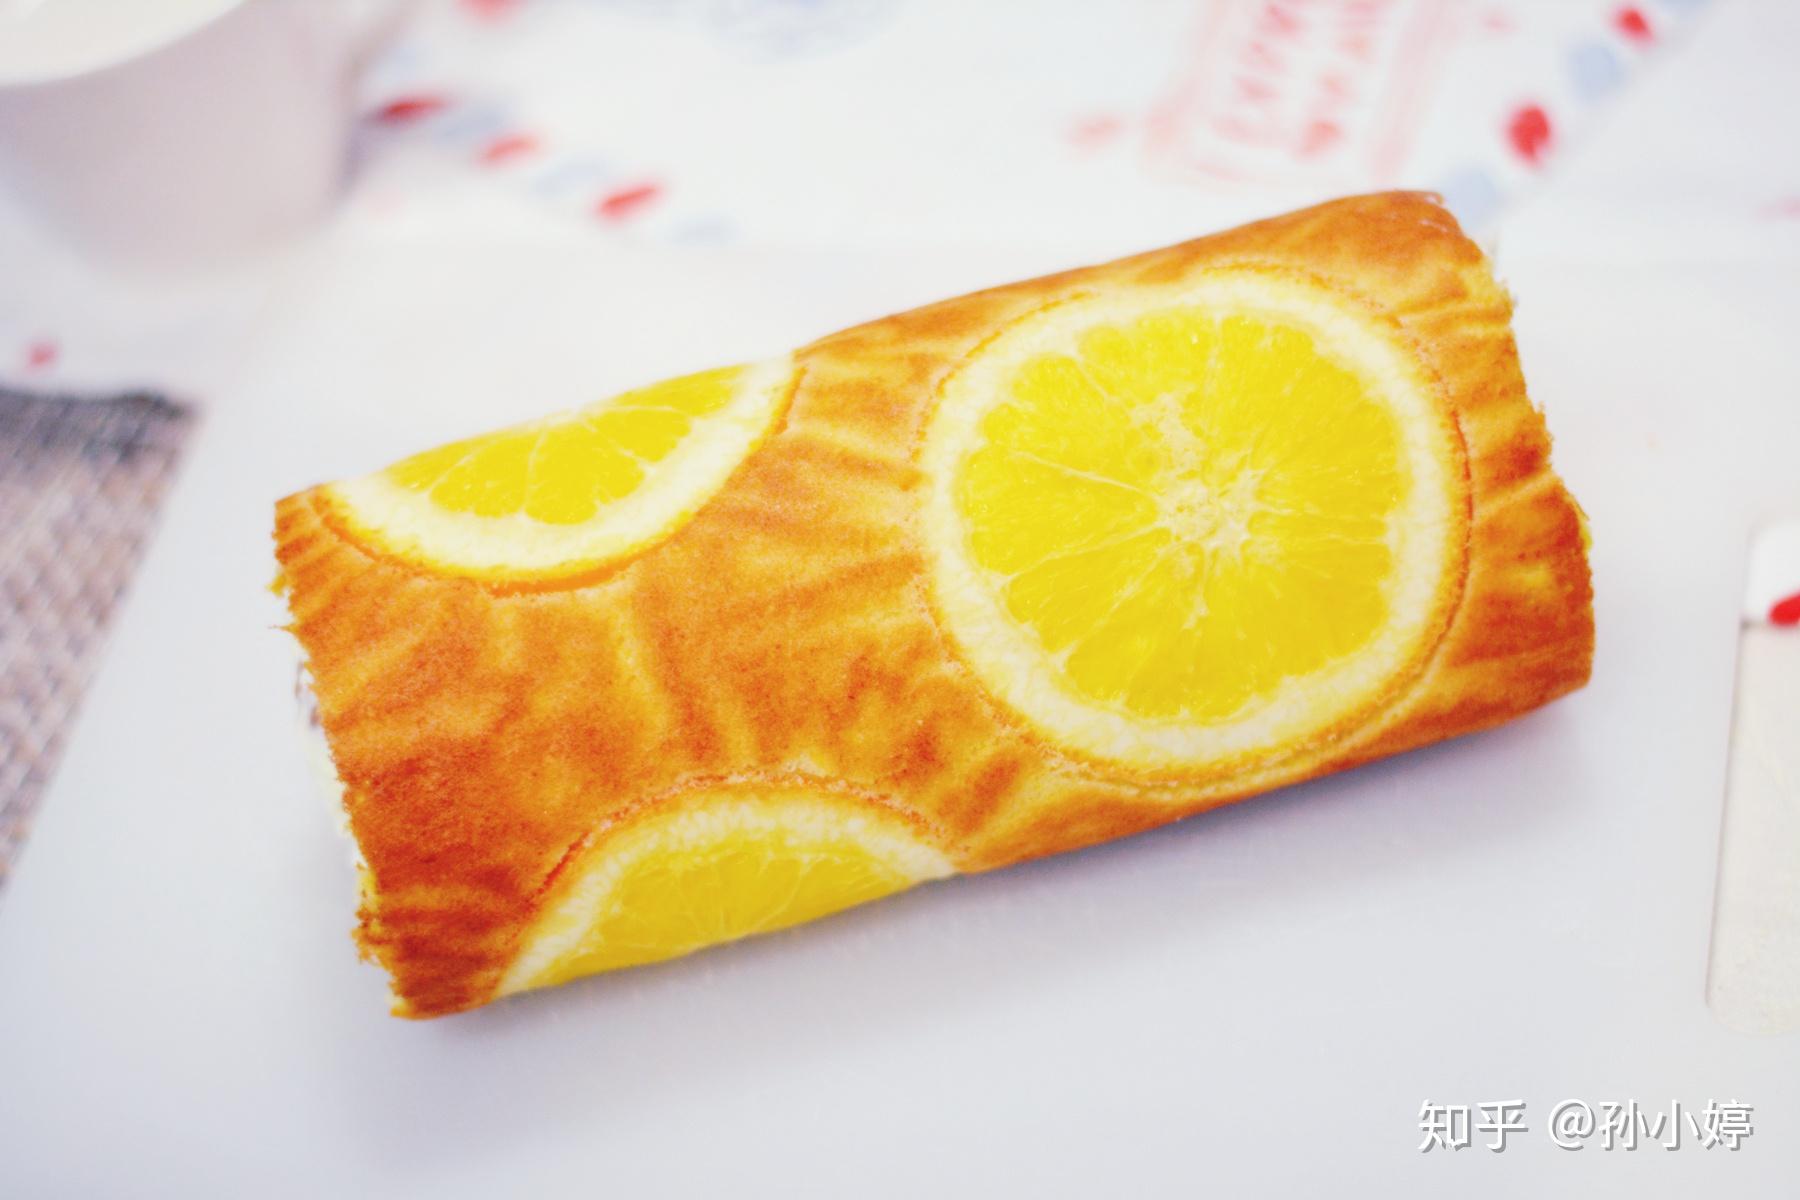 美味的橙子,你知道它是怎么种植的吗